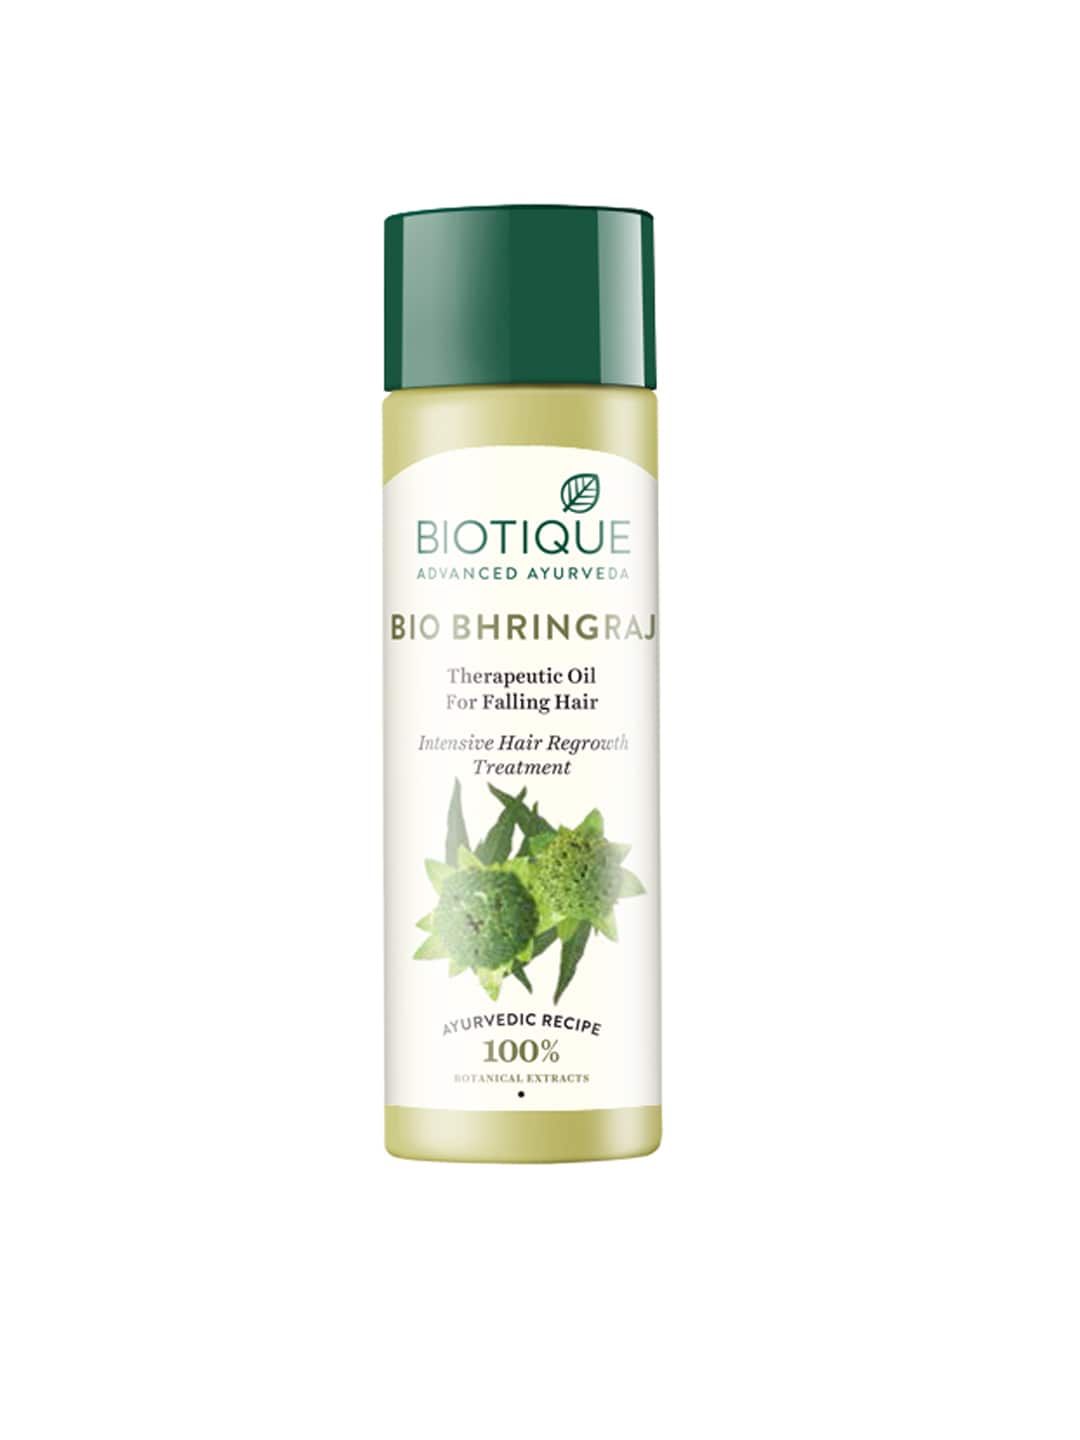 Biotique Sustainable Bio Bhringraj Therapeutic Hair Oil 120 ml Price in India